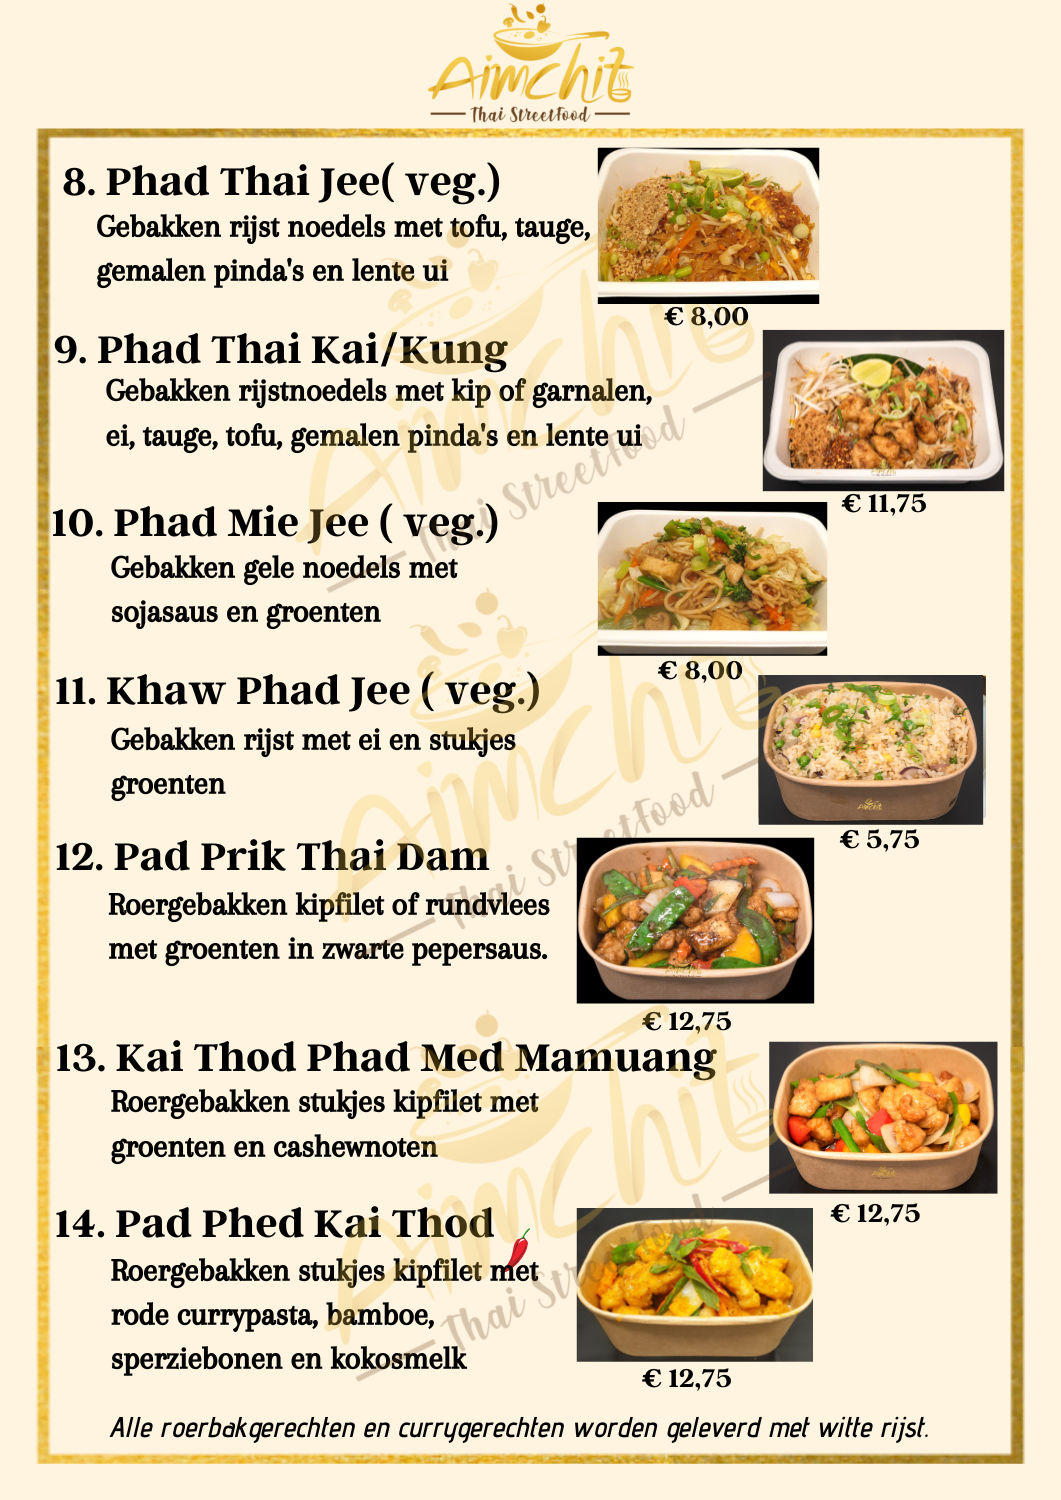 Aimchit  Thai  Streetfood